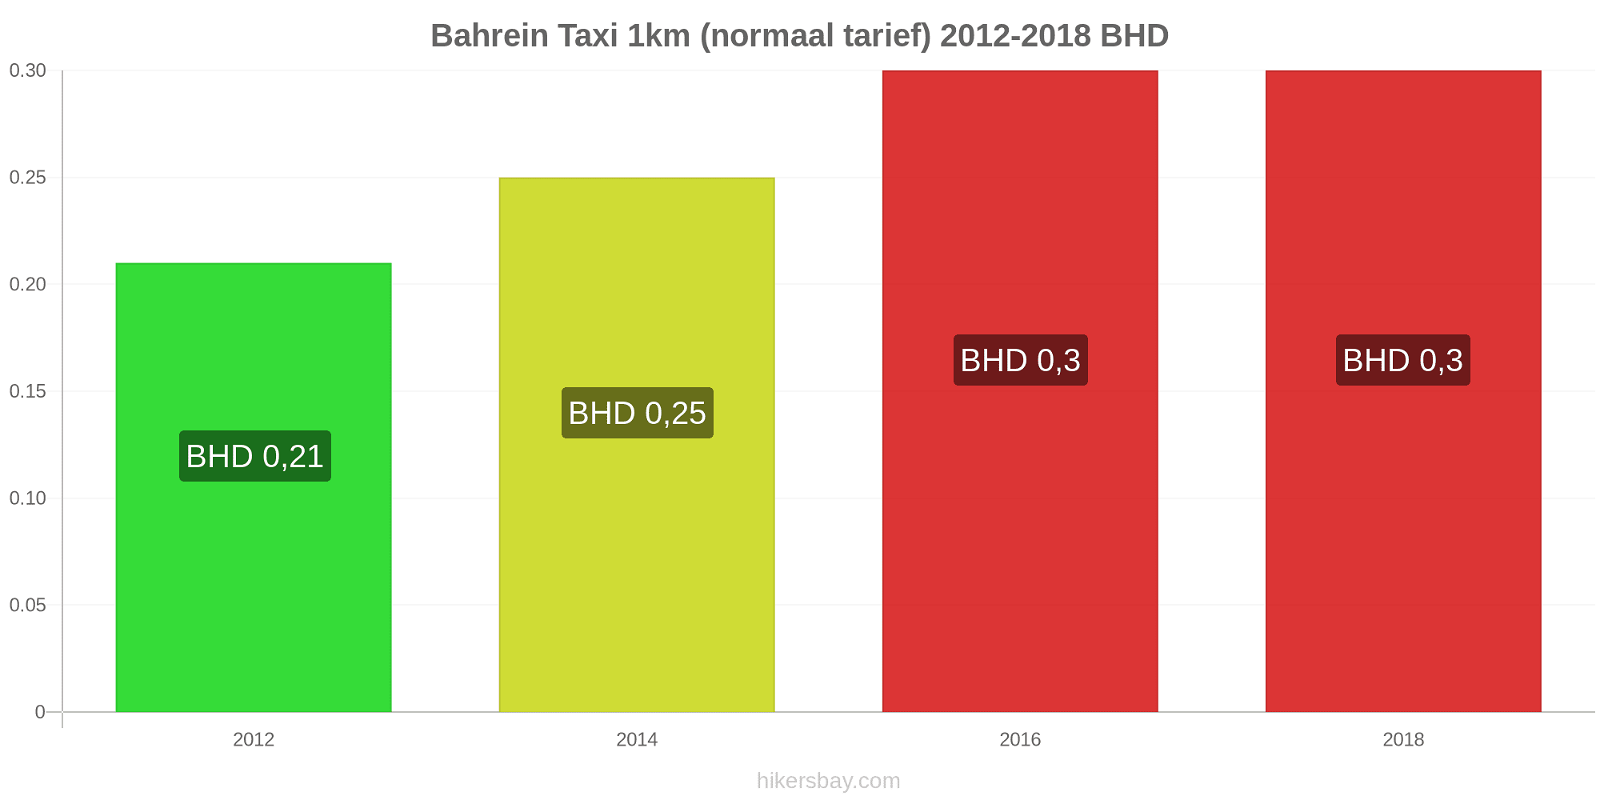 Bahrein prijswijzigingen Taxi 1km (normaal tarief) hikersbay.com